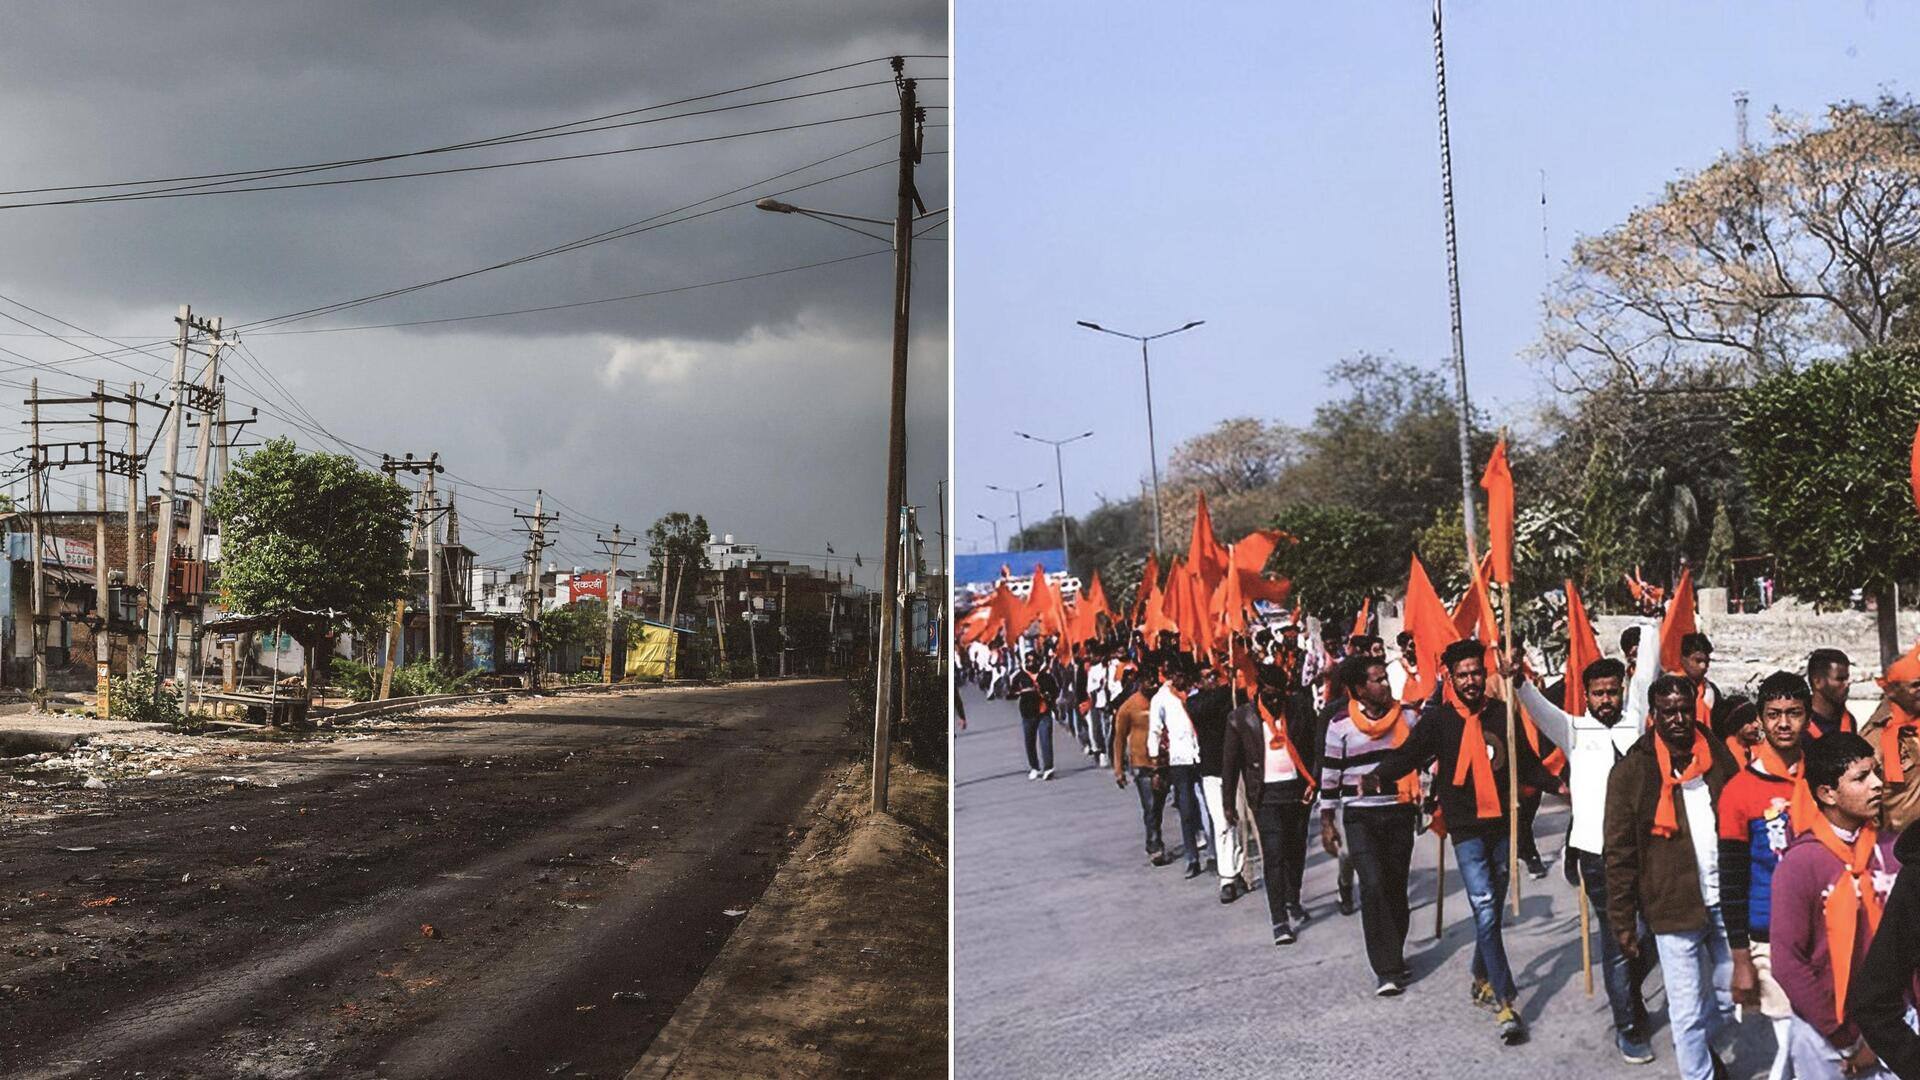 नूंह हिंसा: आज पलवल में हिंदू संगठनों की महापंचायत, ब्रजमंडल यात्रा पर हो सकता है फैसला